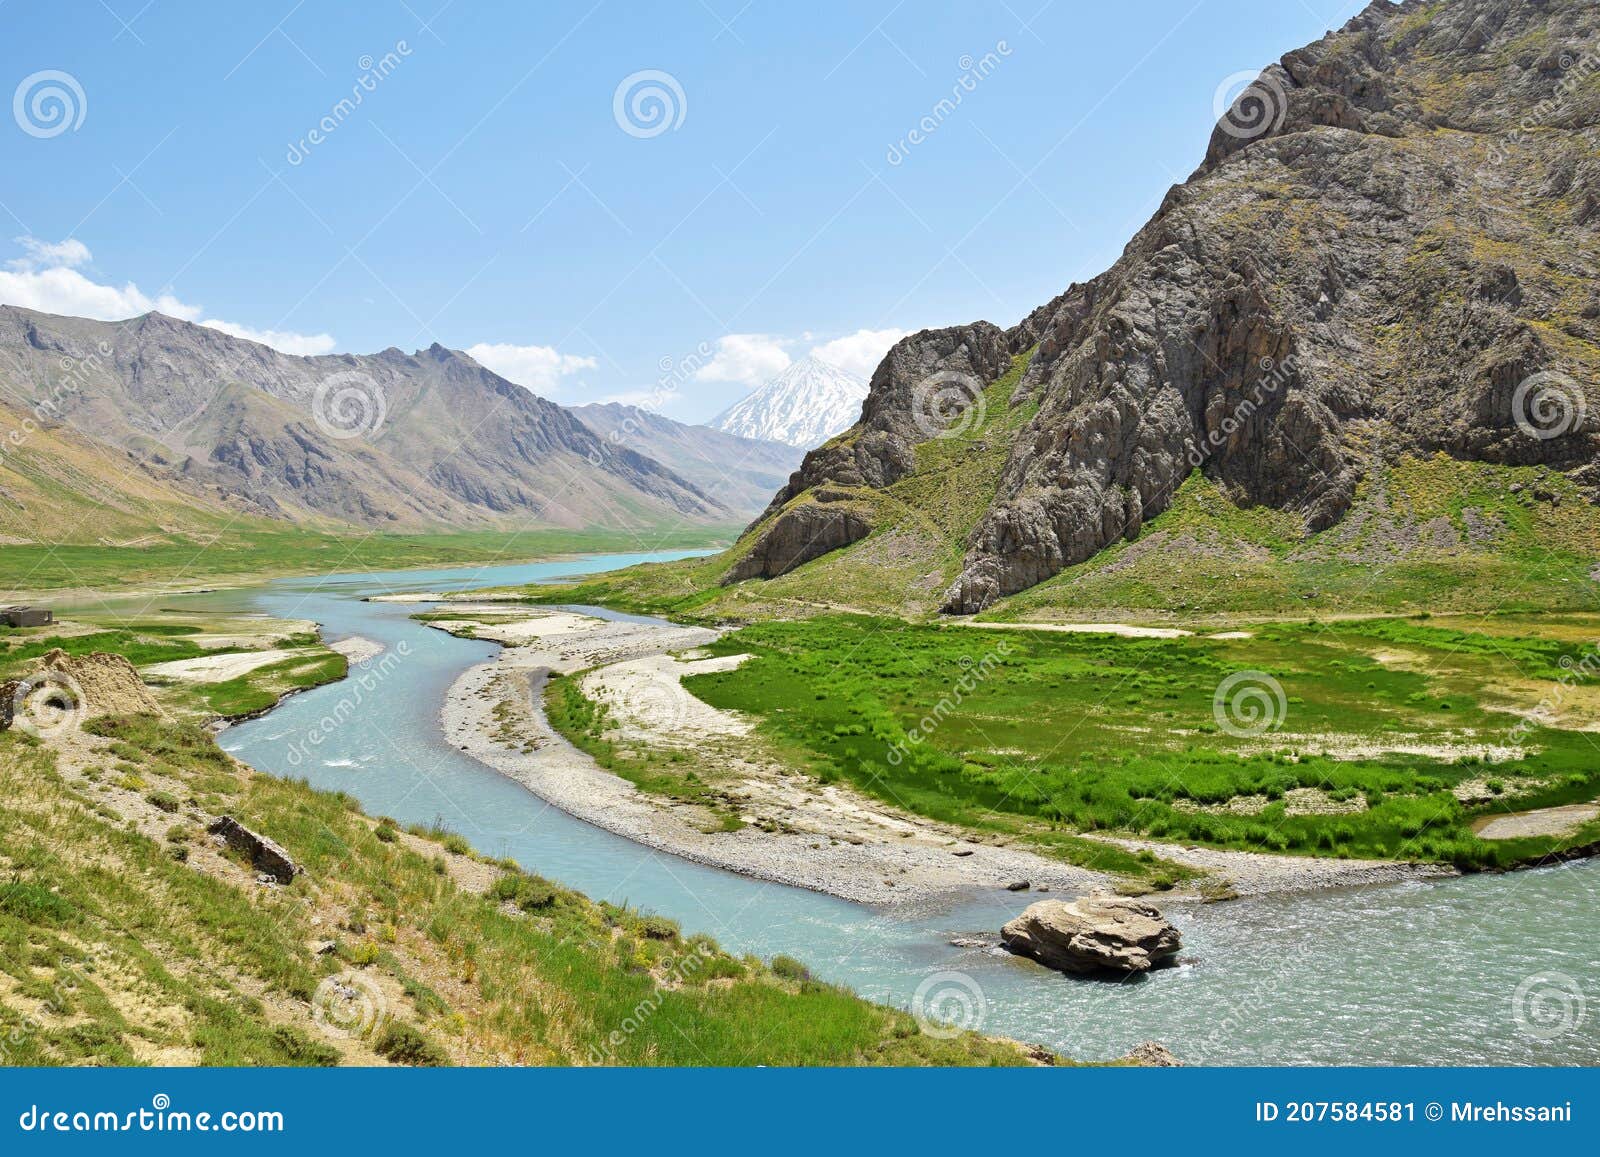 landscape of mount damavand and lar river , iran